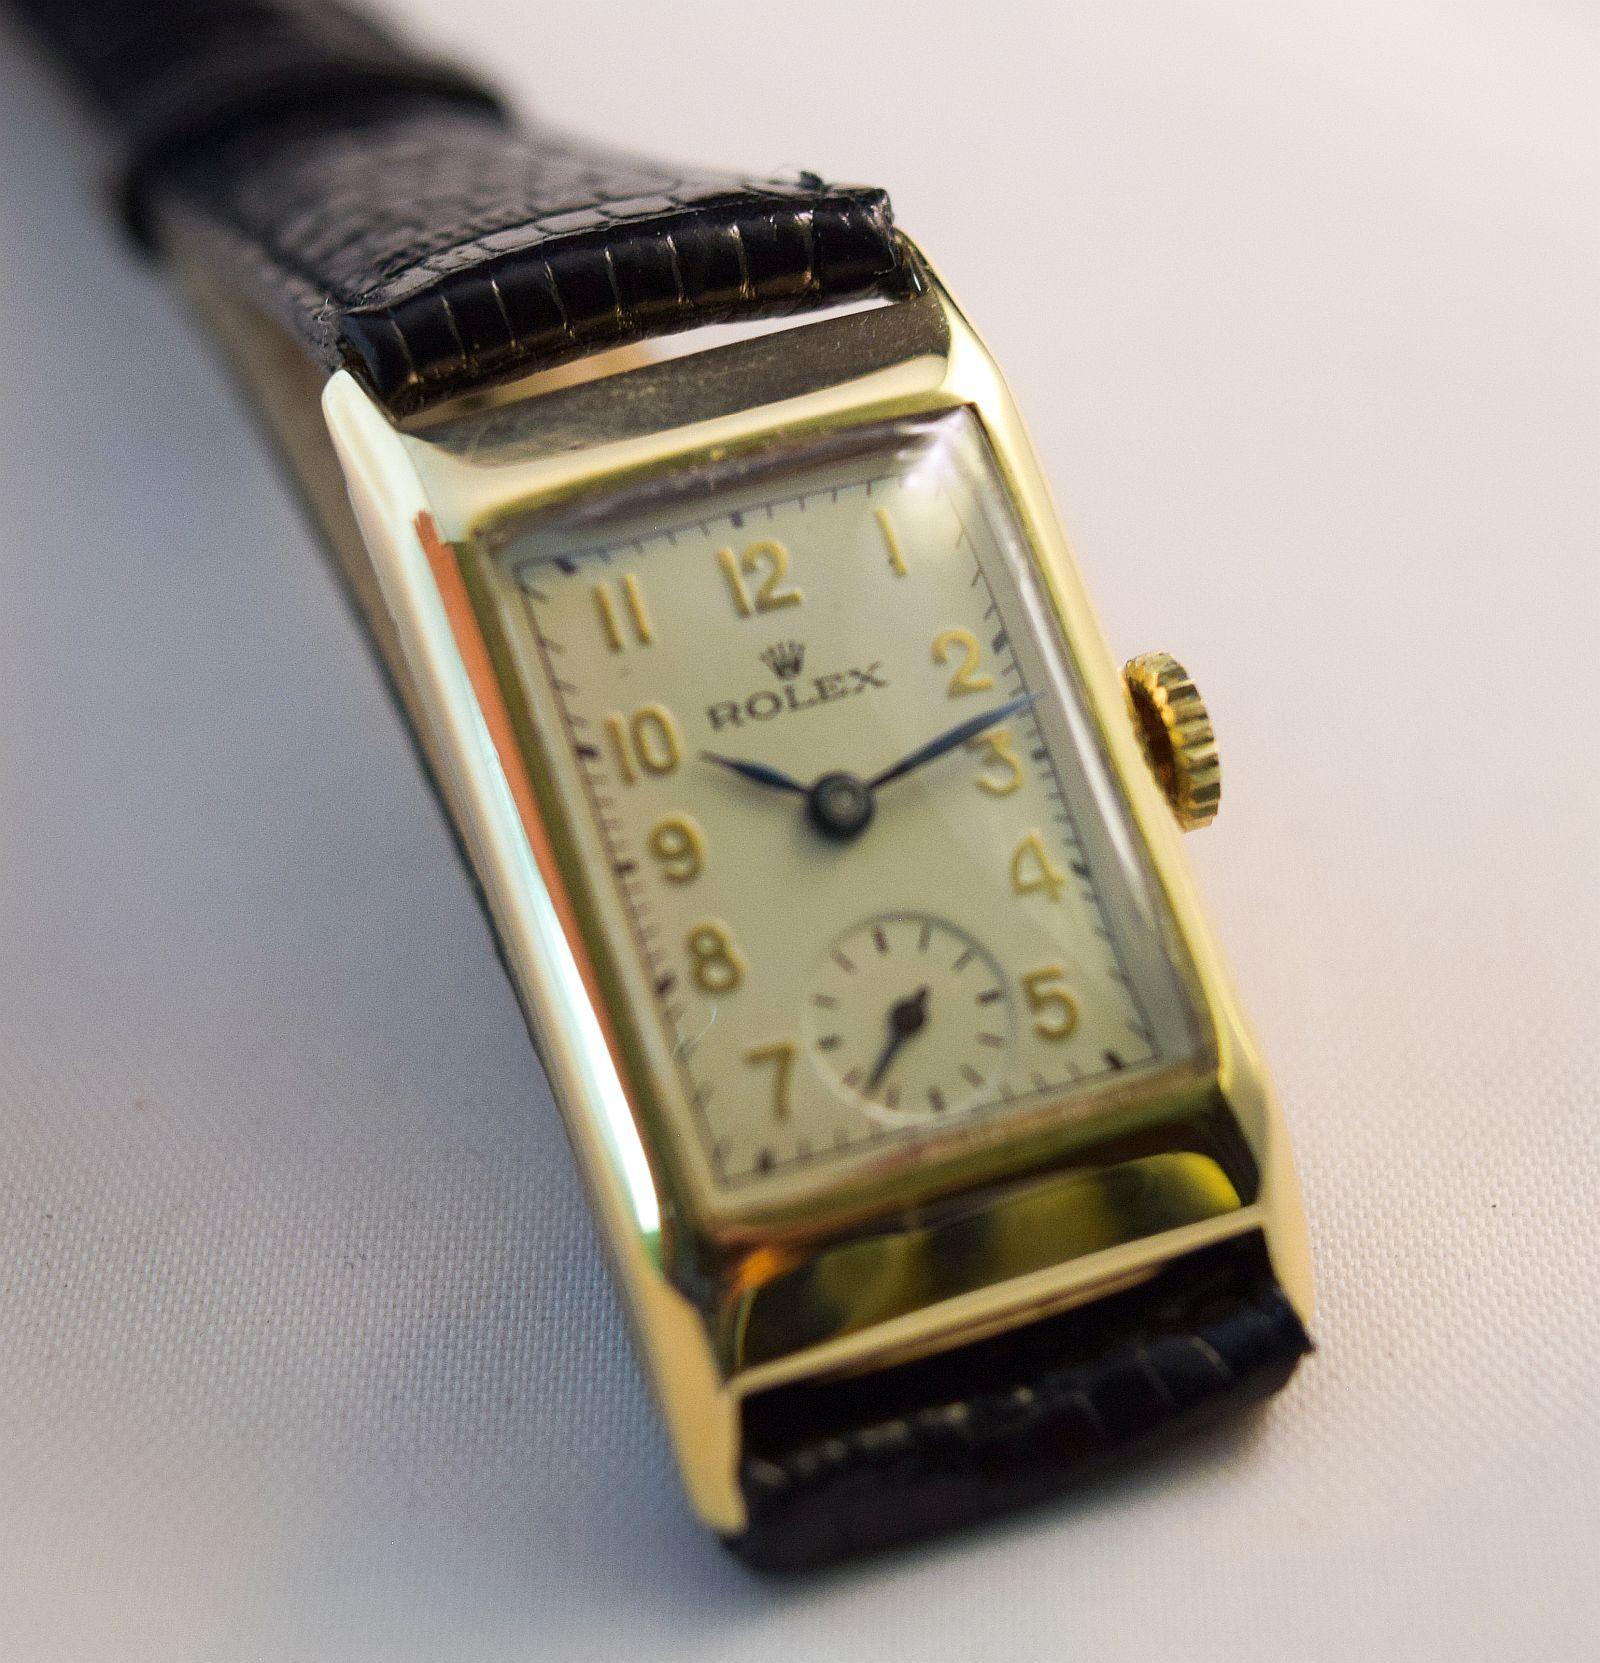 Rolex Ref 2356 Circa 1930
Rolex Vintage By Boîtier rectangulaire en or massif avec cornes fixes en fil d'or massif.
Cette jolie montre est à remontage manuel.
En excellent état, elle a été récemment révisée, nettoyée et restaurée de fond en comble